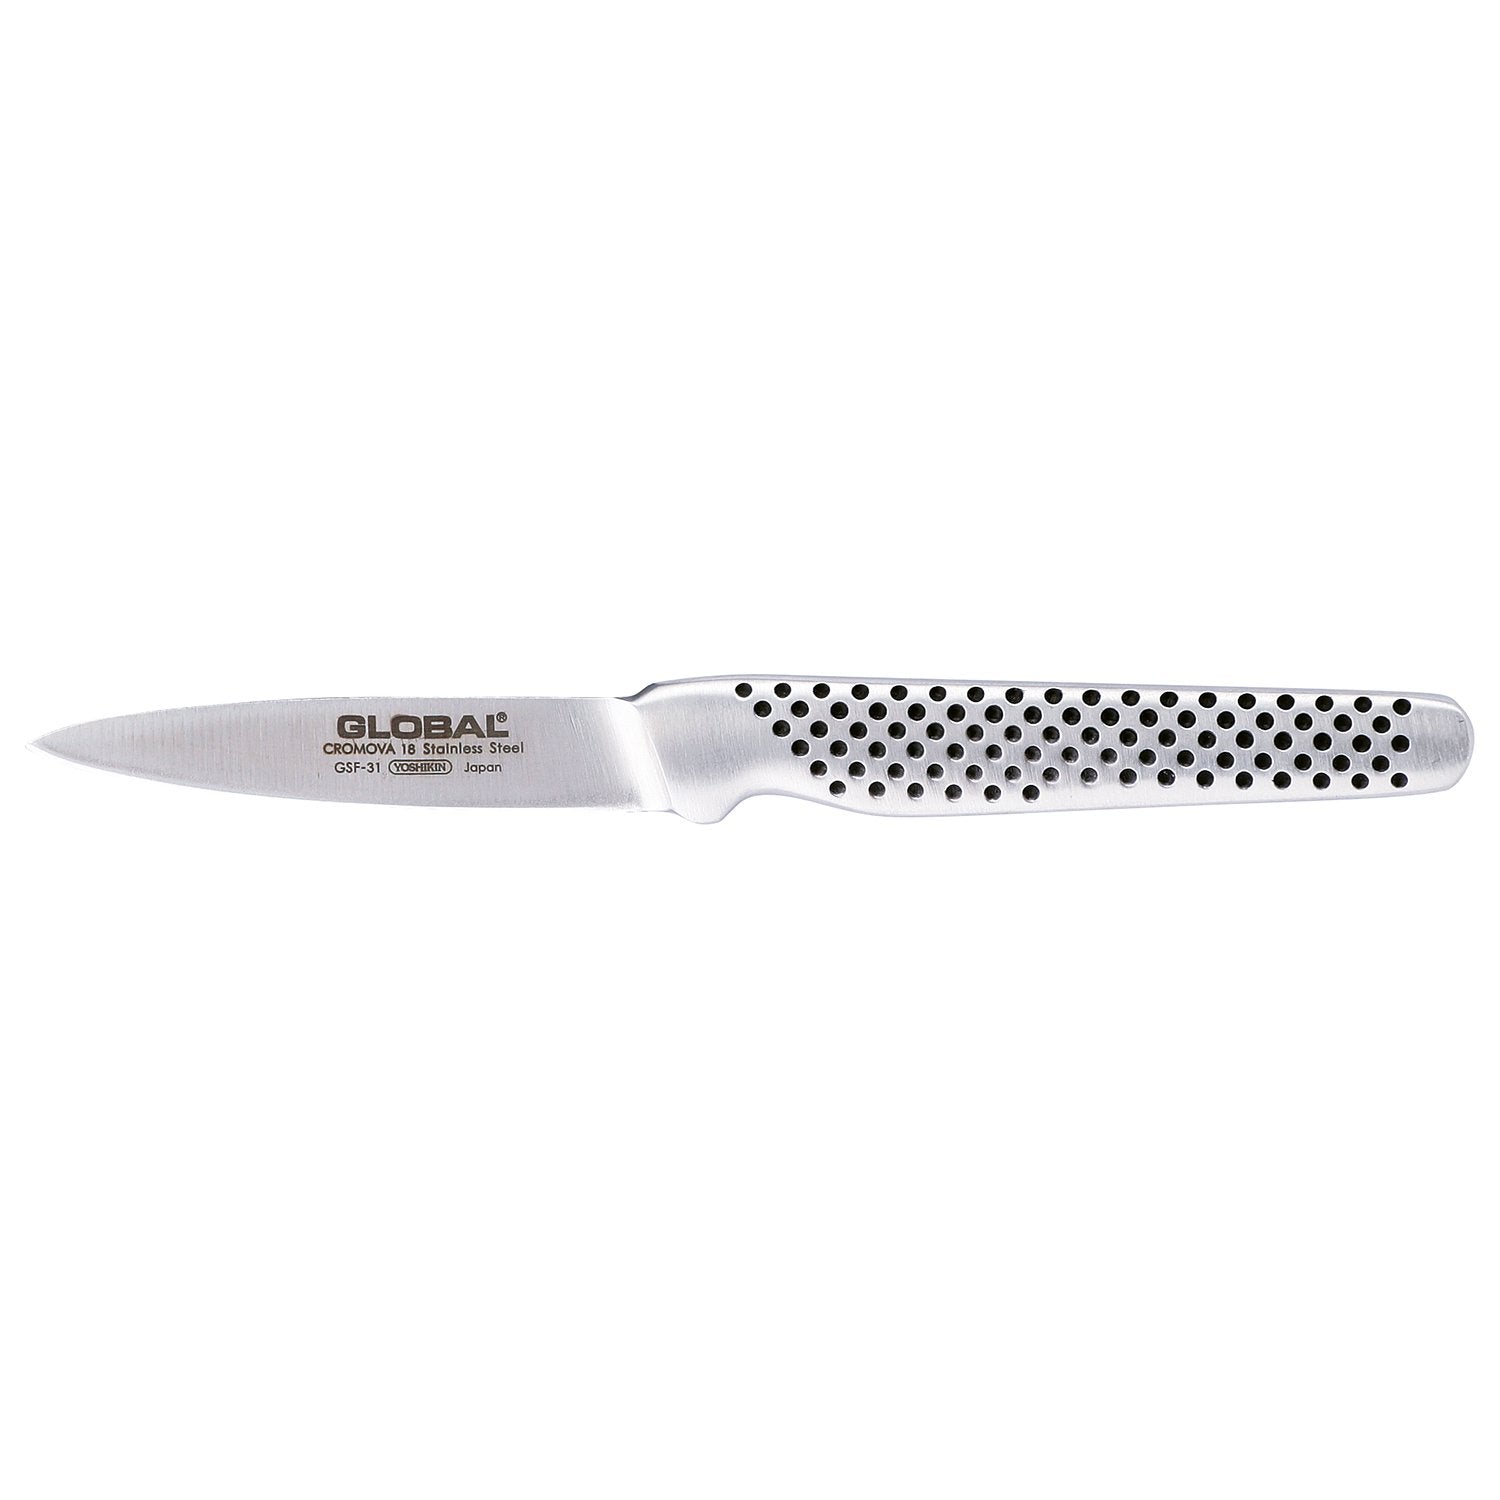 Global GSF 31 Rengøringskniv, 8 cm